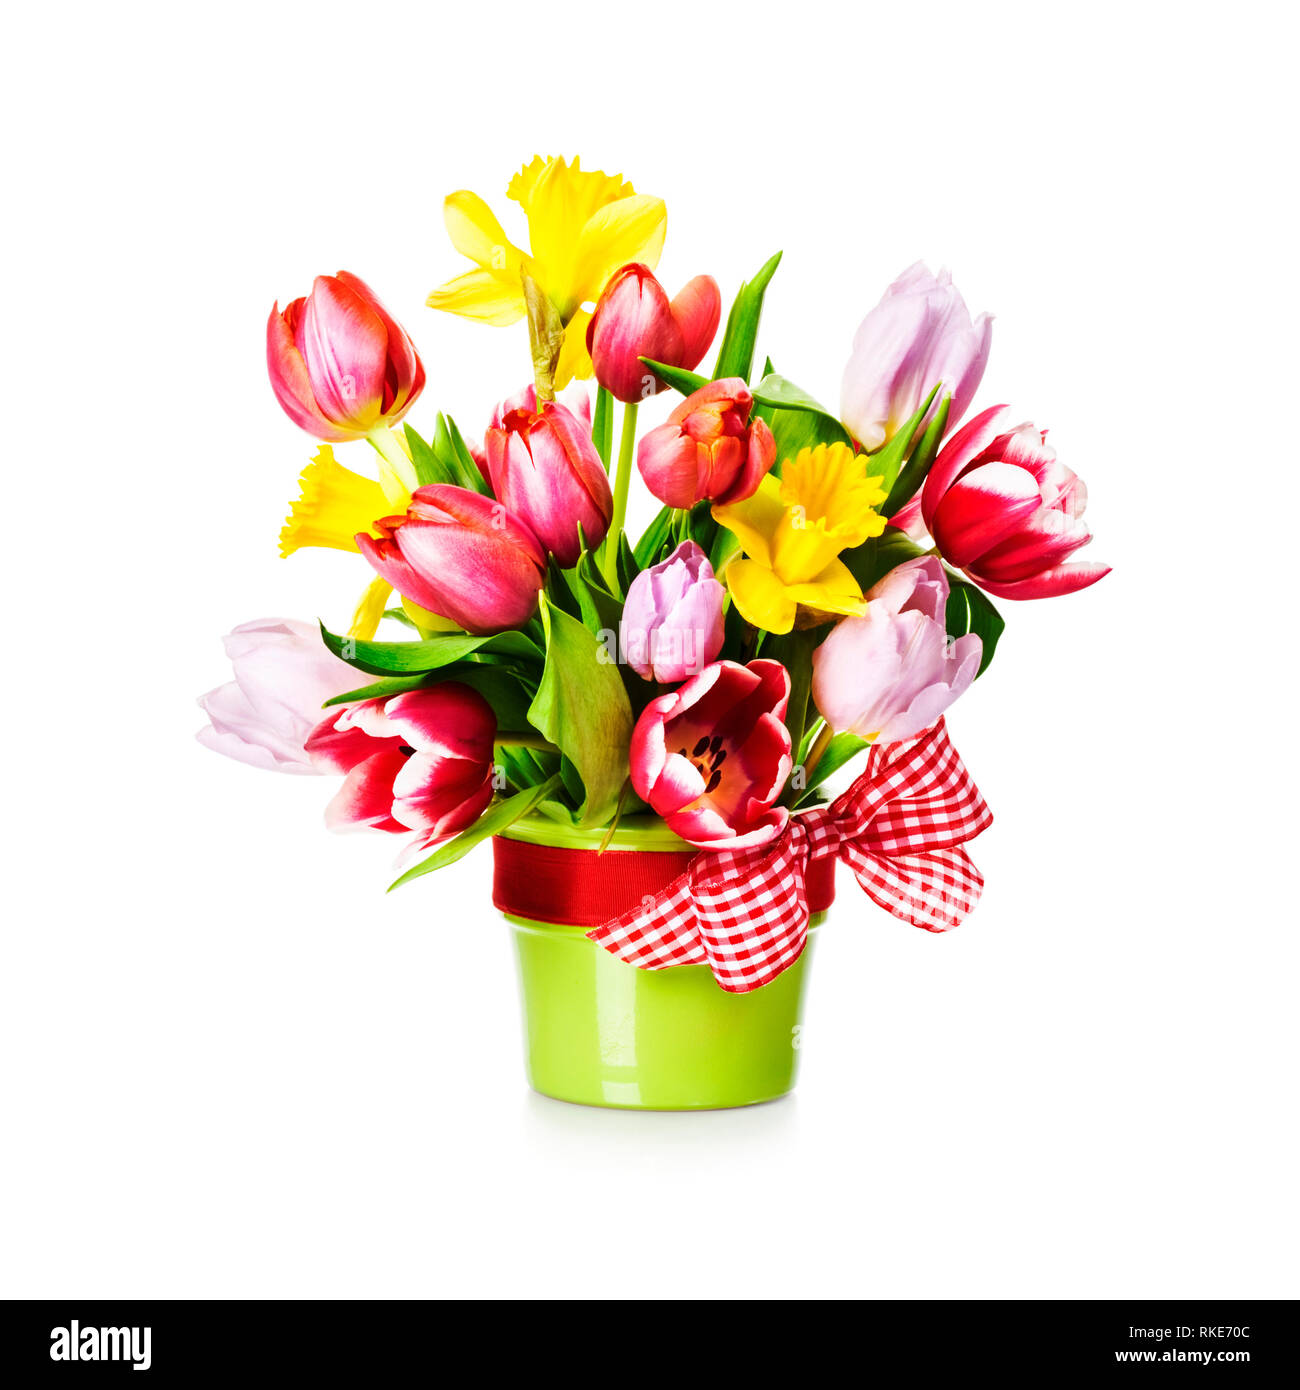 Tulpen und Narzissen in grün Vase mit Schleife. Frühling Blumen  Blumenstrauß auf weißem Hintergrund. Design Element Stockfotografie - Alamy